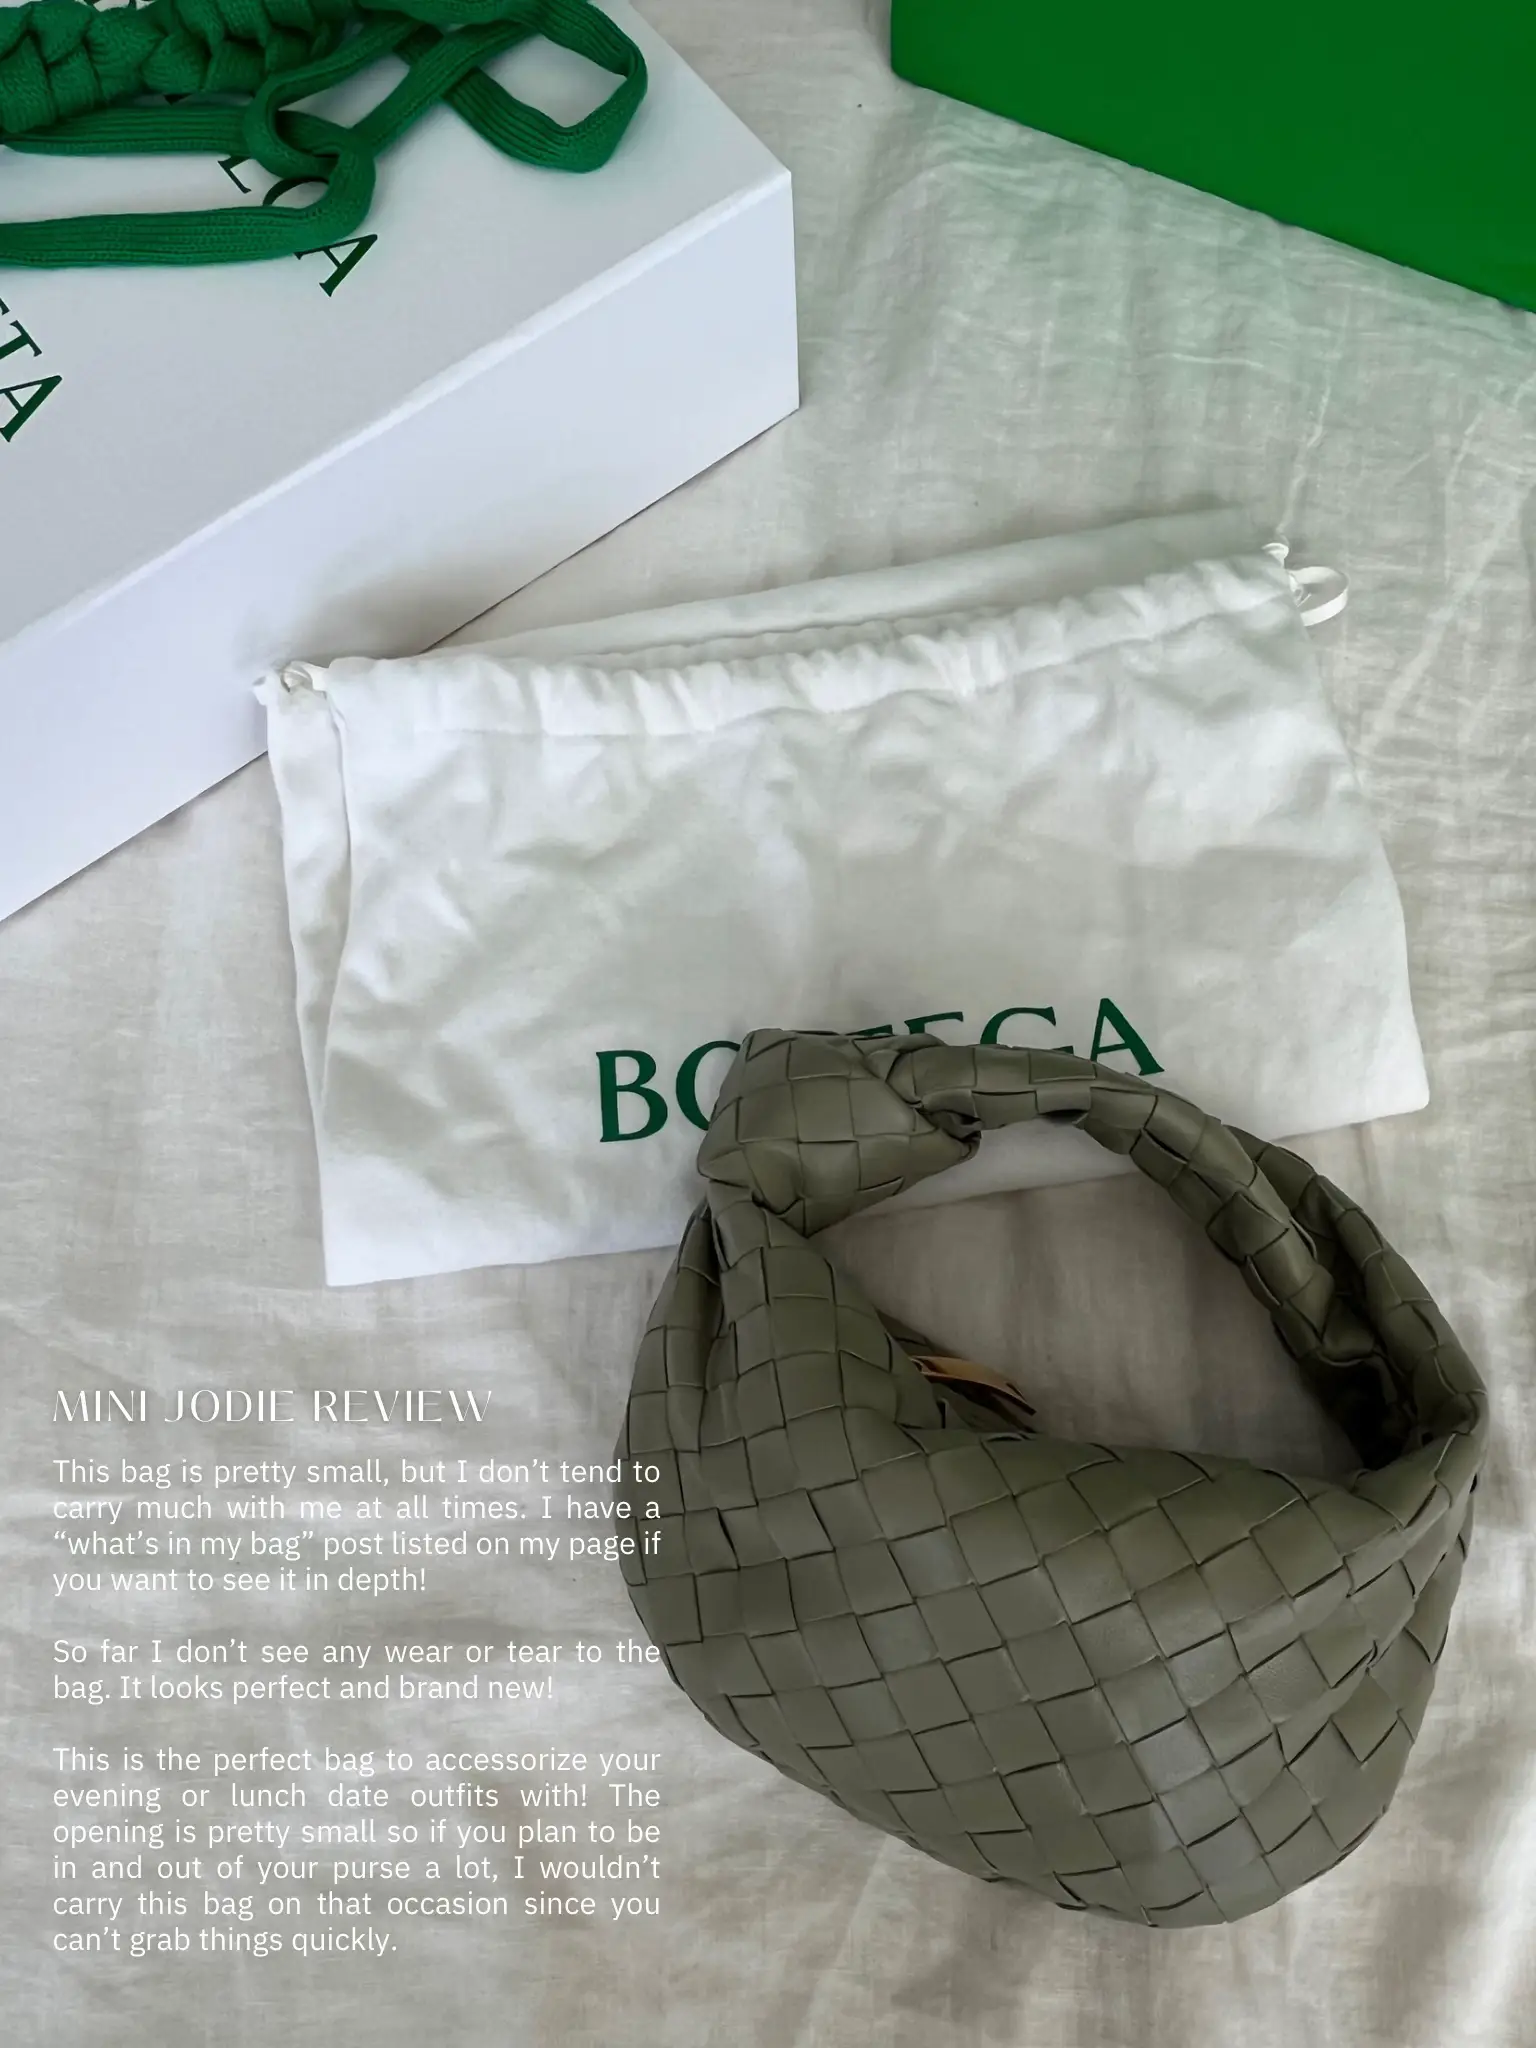 My Honest Review of The Bottega Veneta Chain Cassette Bag